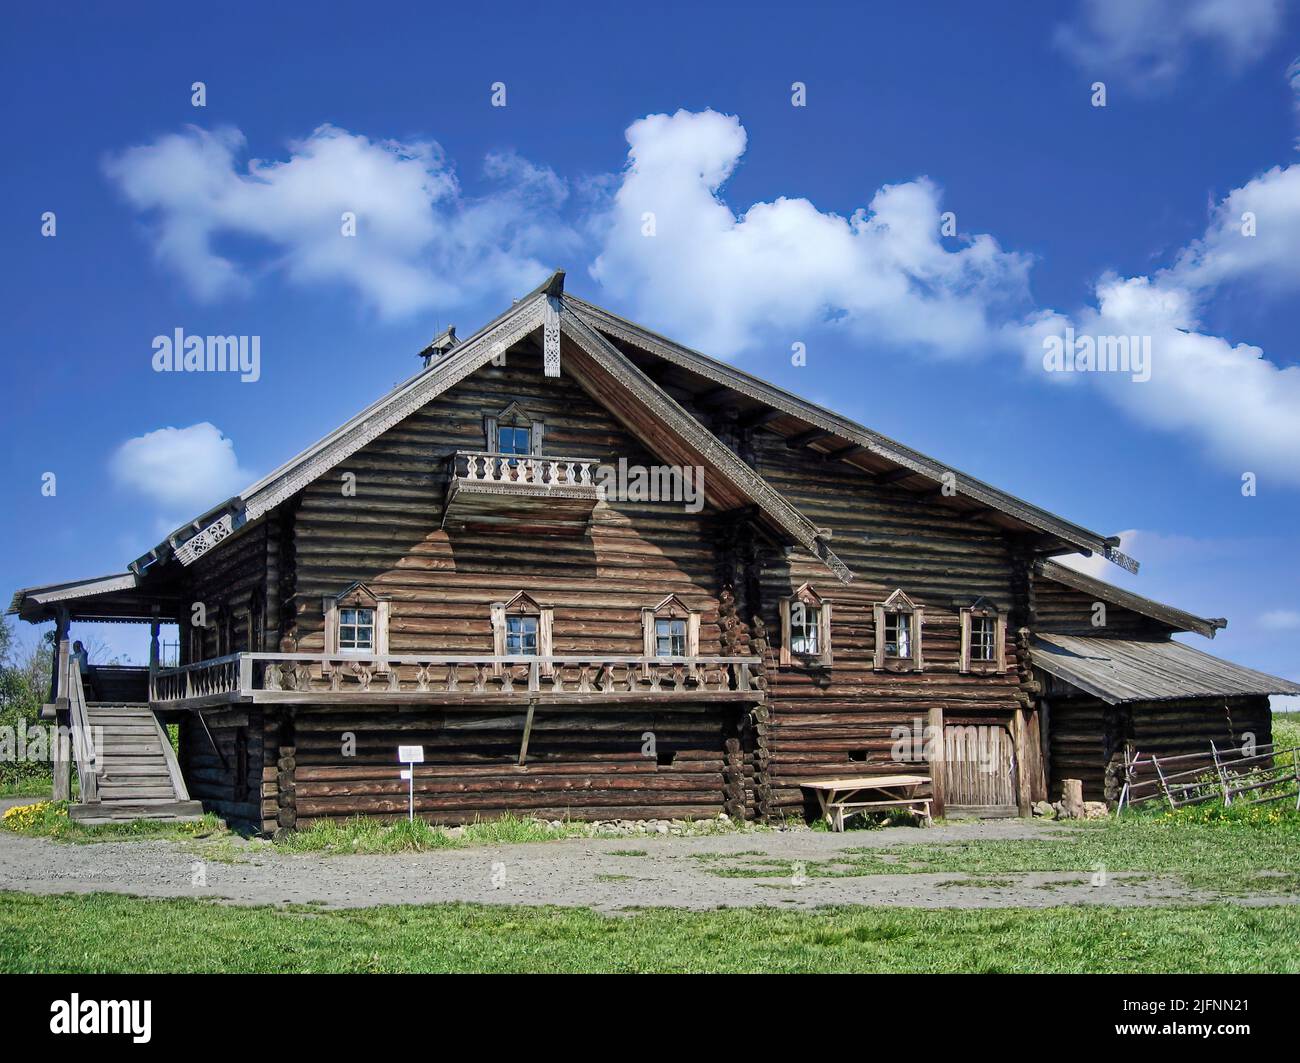 Kiži ist eine Insel in Karelien Russland, gekennzeichnet durch Holzkirchen und Häuser und ist eines der beliebtesten touristischen Destinationen in Russland Stockfoto